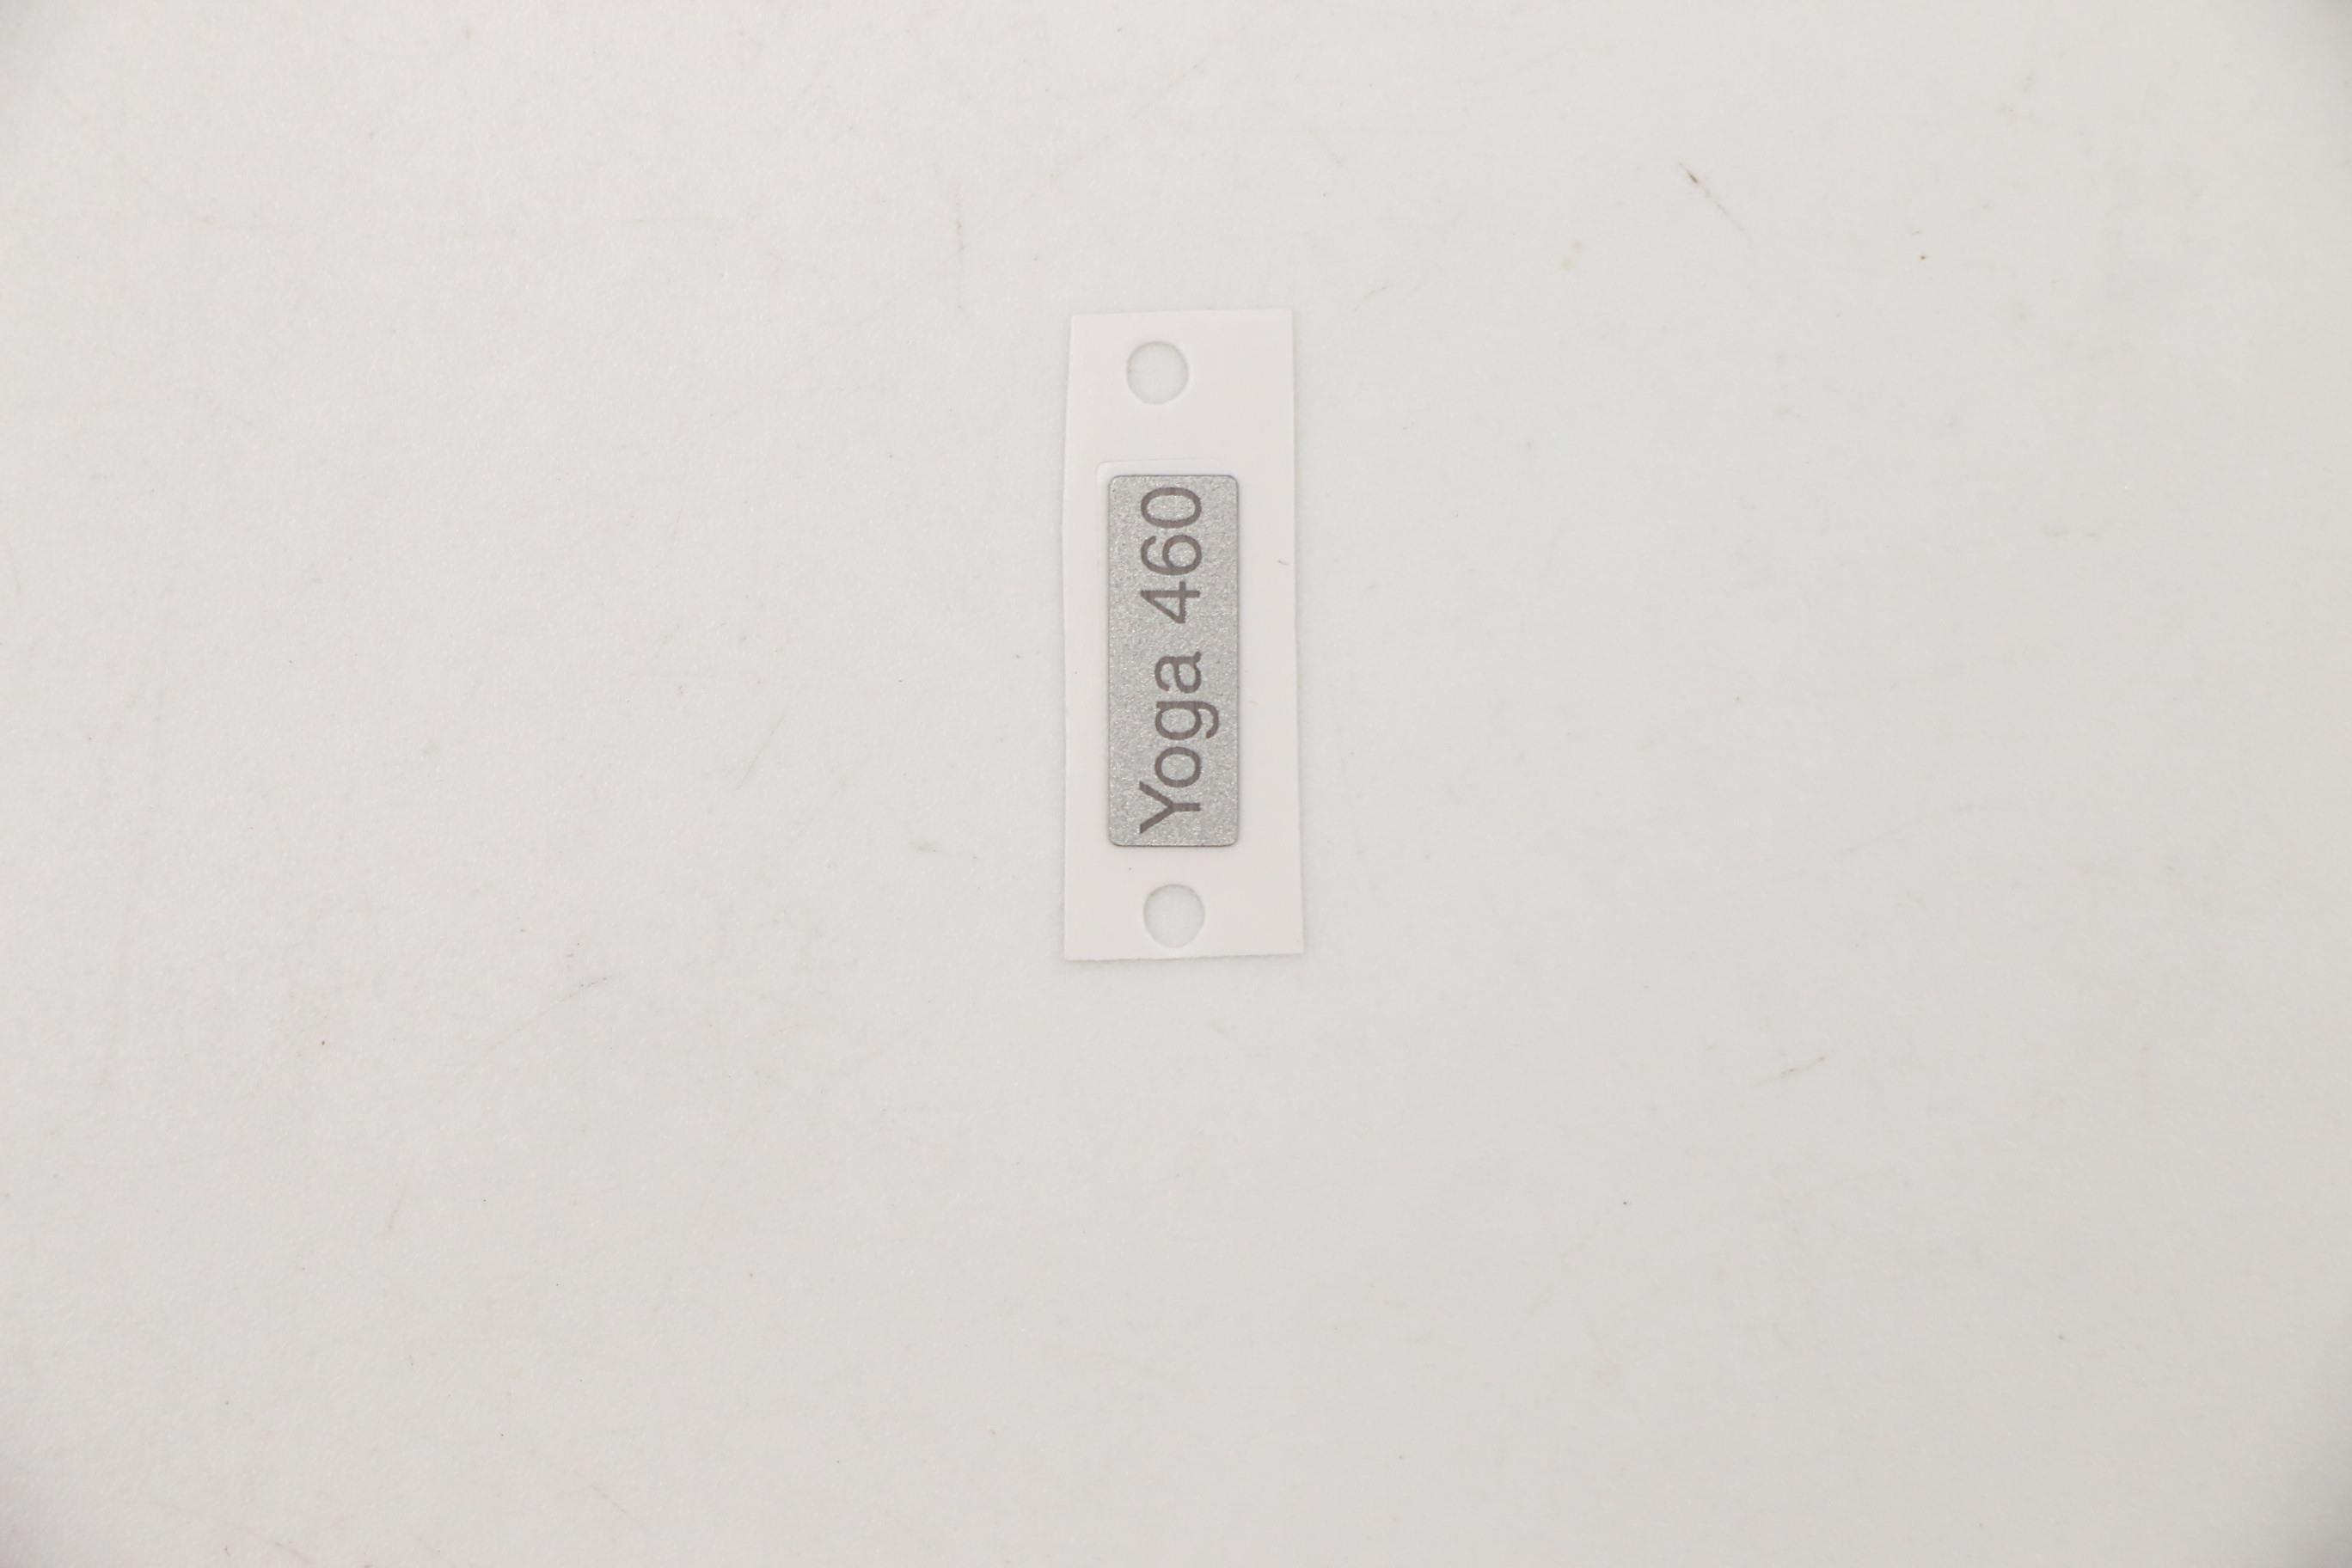 Lenovo Part  Original Lenovo Carling FRU Name Label Yoga 460 Silver